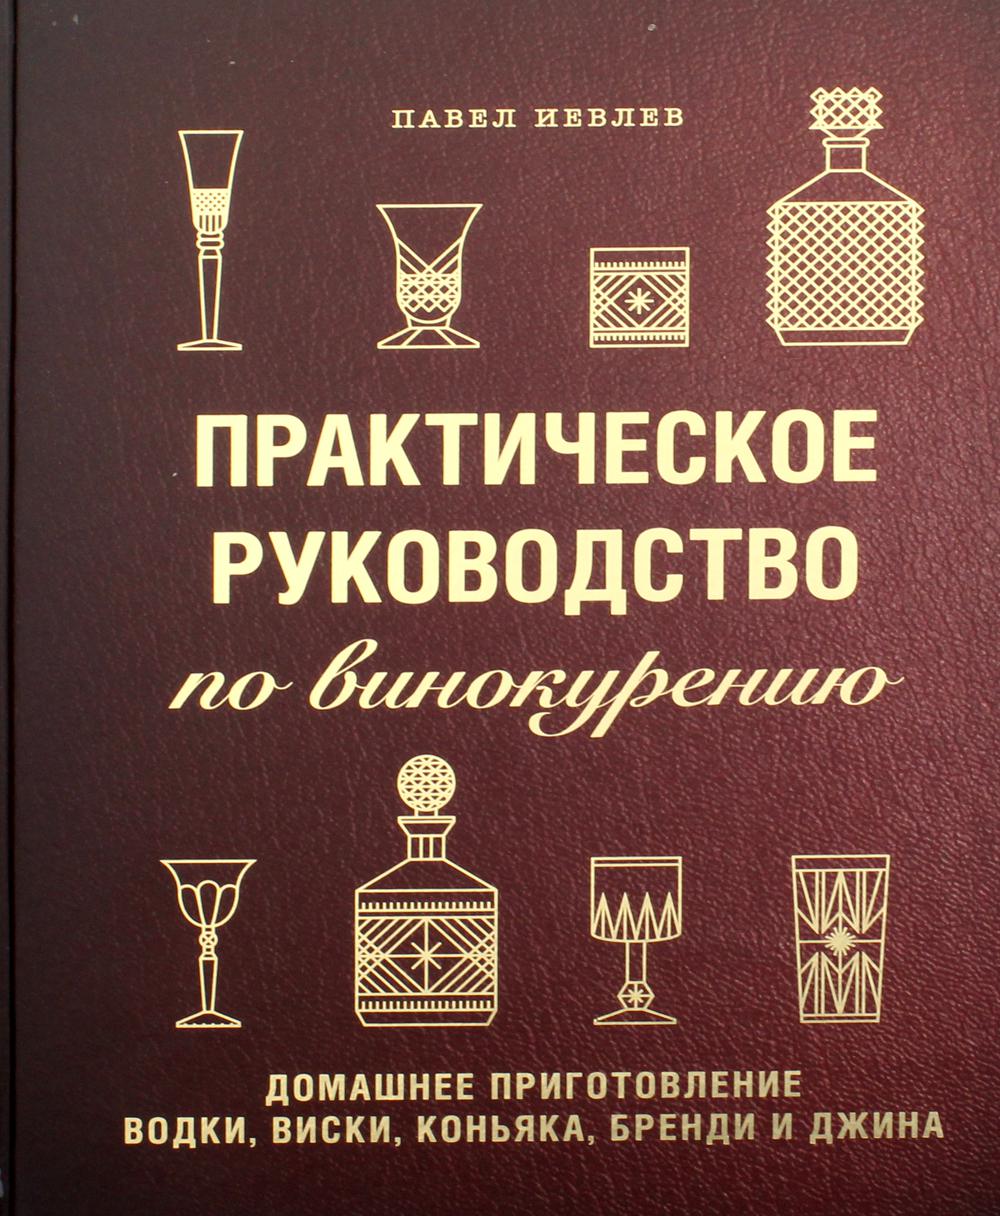 Практическое руководство по винокурению. Домашнее приготовление водки, виски, коньяка, бренди и джина